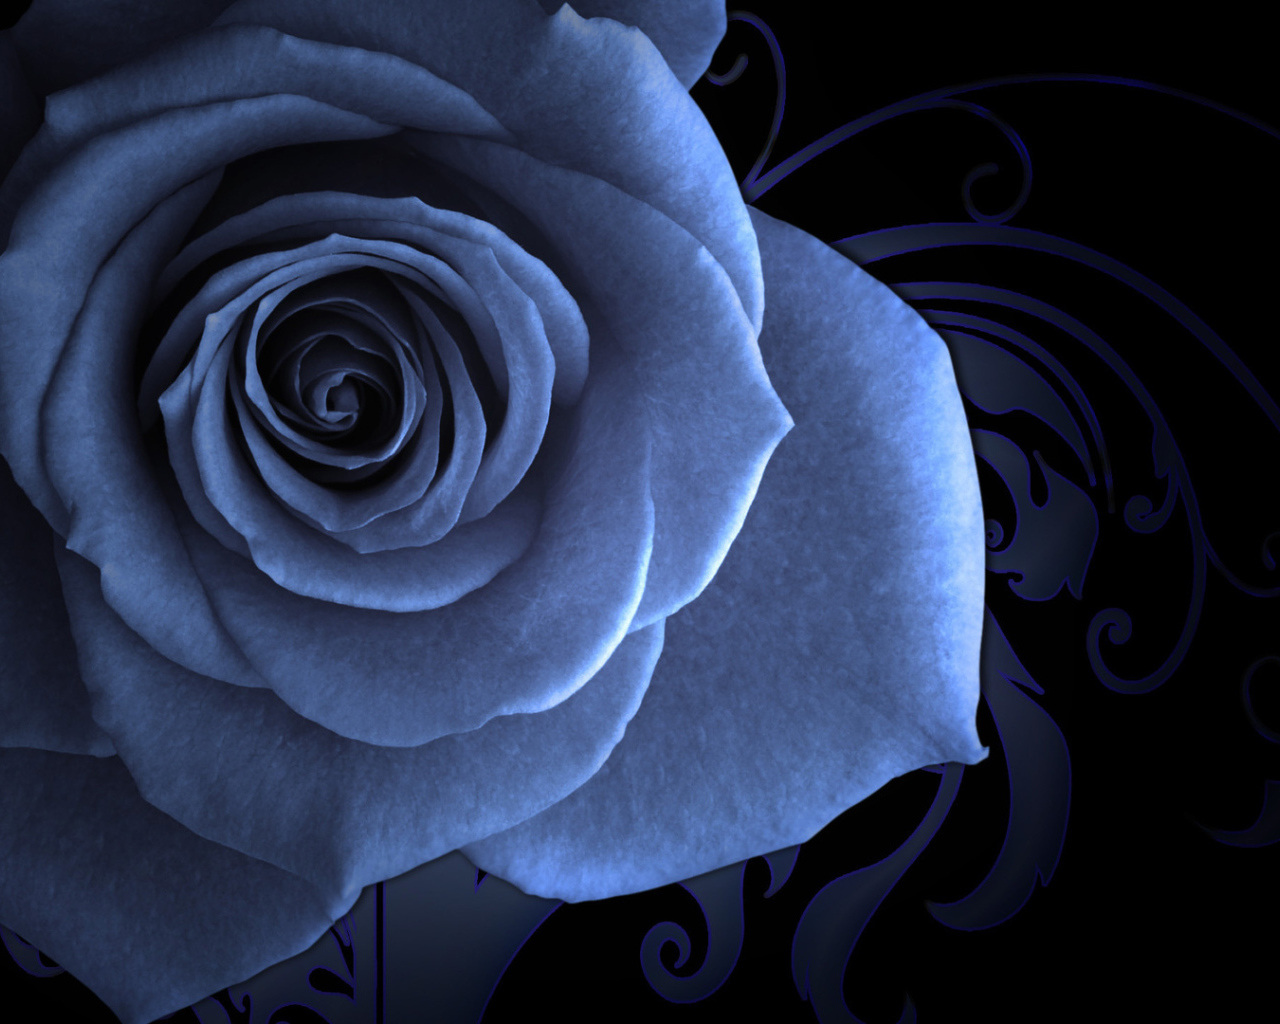 Синяя роза на красивом фоне